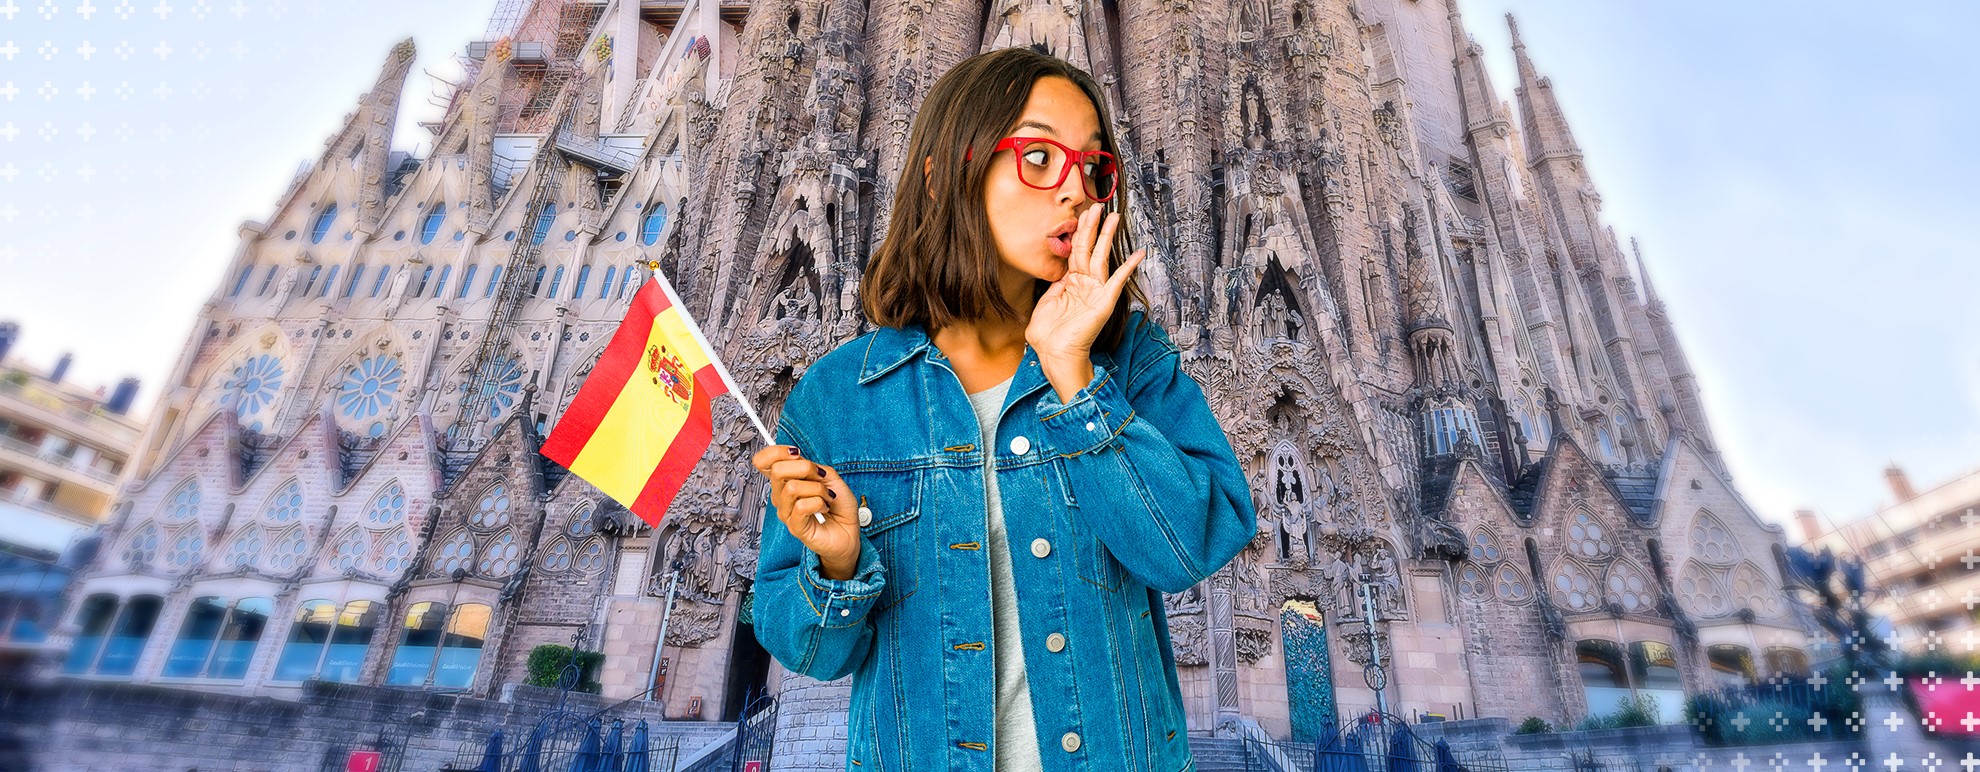 conectores - imagem de uma mulher segurando a bandeira da espanha